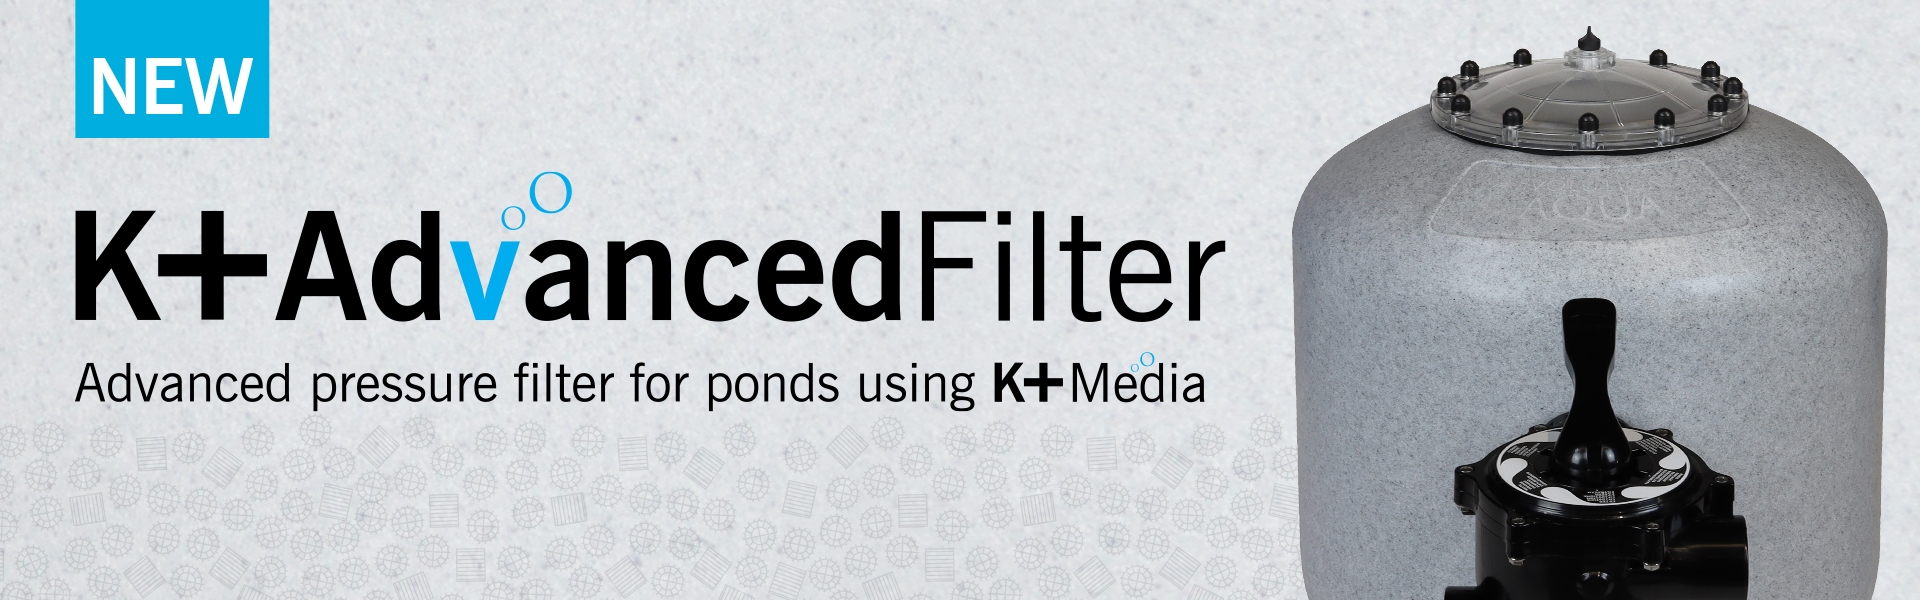 K+Advanced Filter - Pressure filter information page